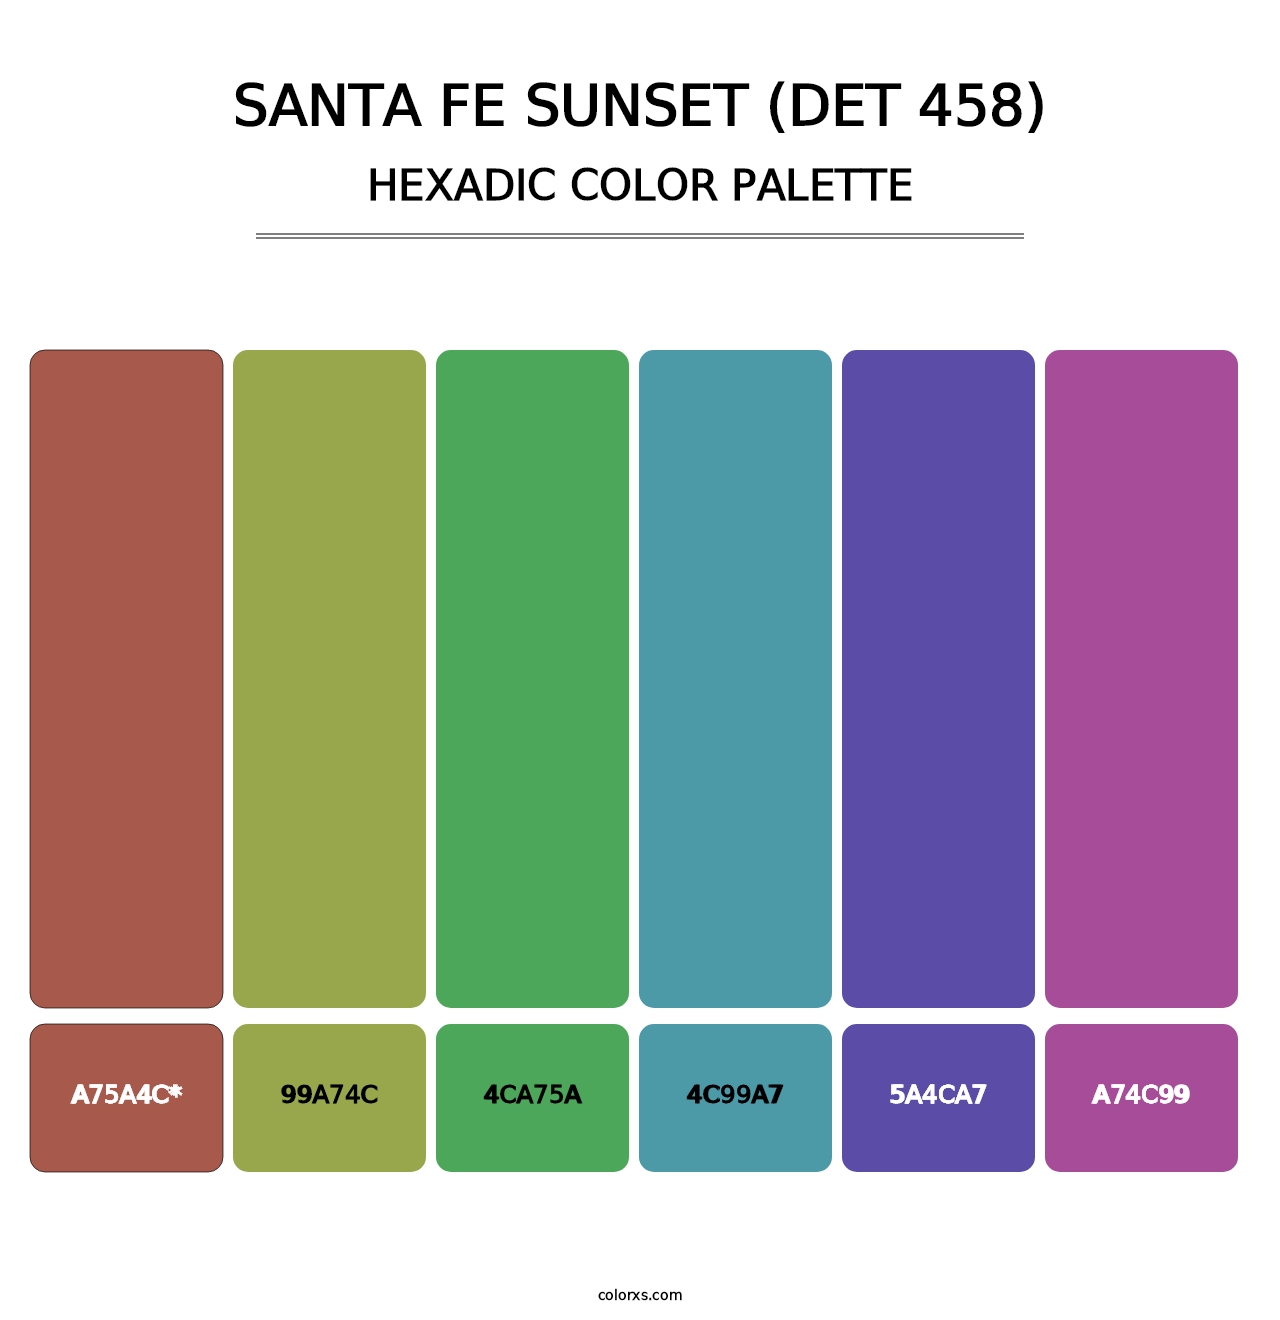 Santa Fe Sunset (DET 458) - Hexadic Color Palette